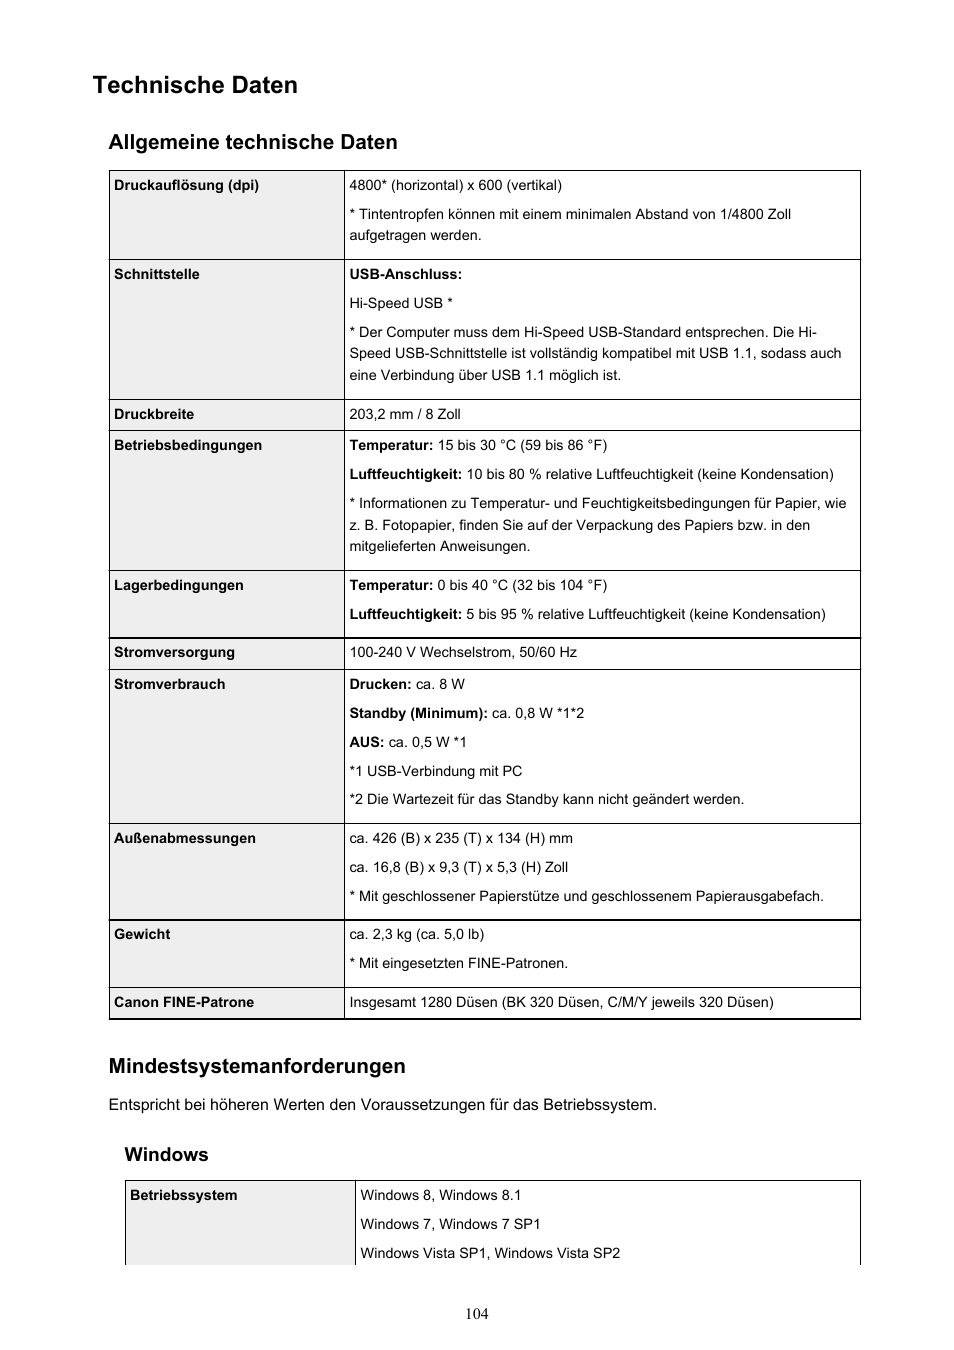 Technische daten, Allgemeine technische daten, Mindestsystemanforderungen | Windows | Canon PIXMA iP2850 Benutzerhandbuch | Seite 104 / 347